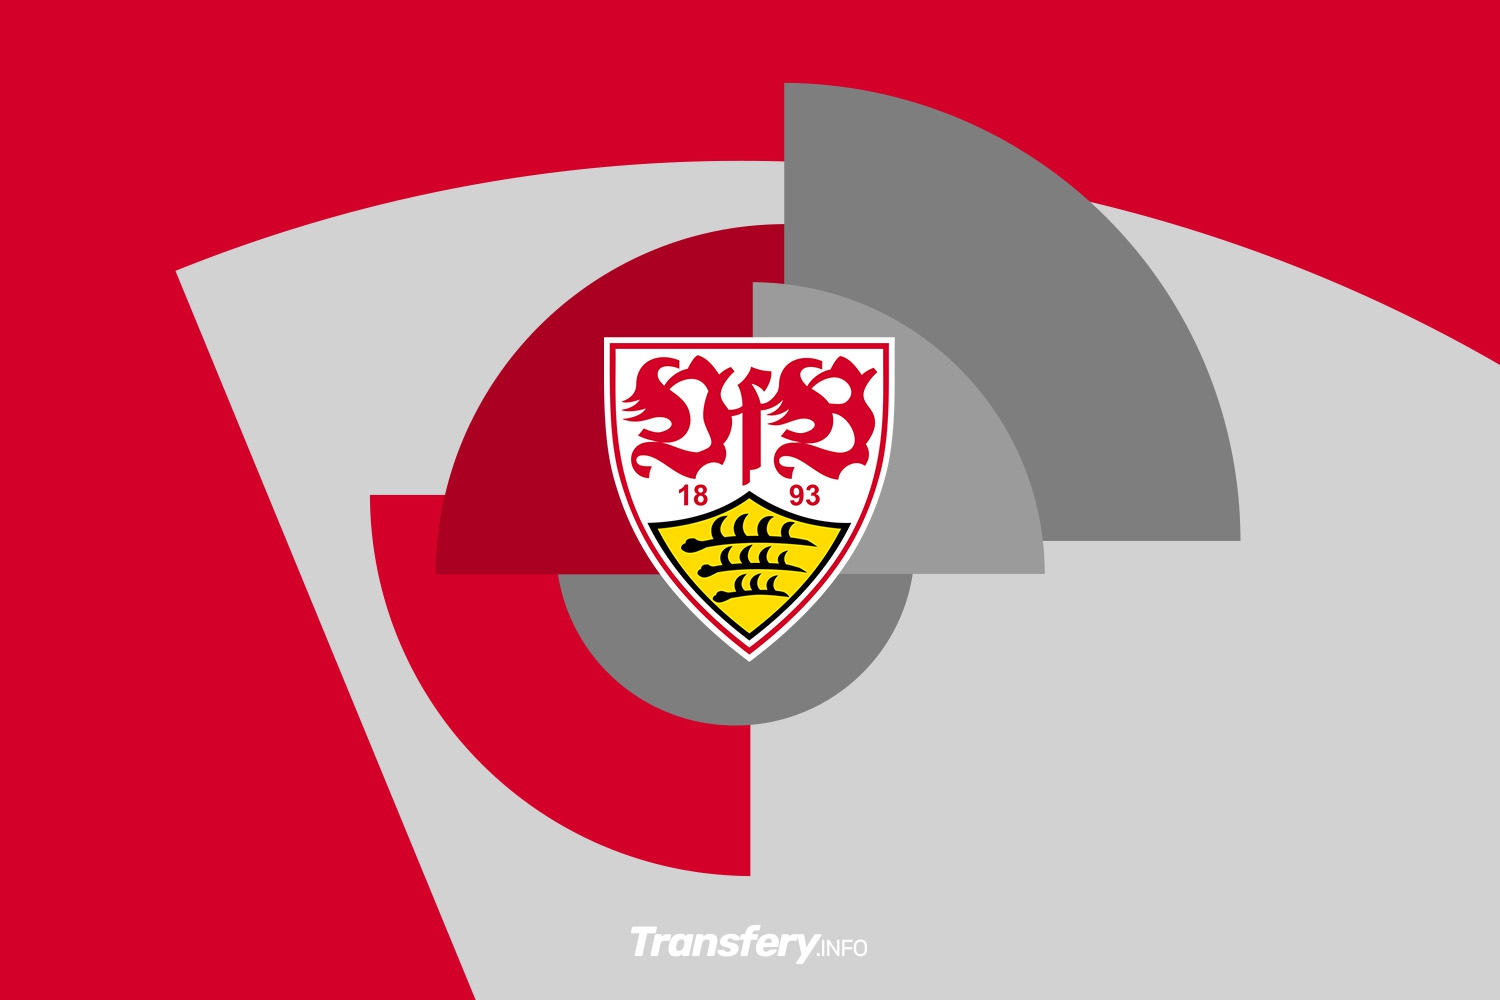 Gwiazda VfB Stuttgart wciąż dostępna w promocyjnych warunkach. Awans do fazy pucharowej EURO 2024 przedłużył ważność klauzul